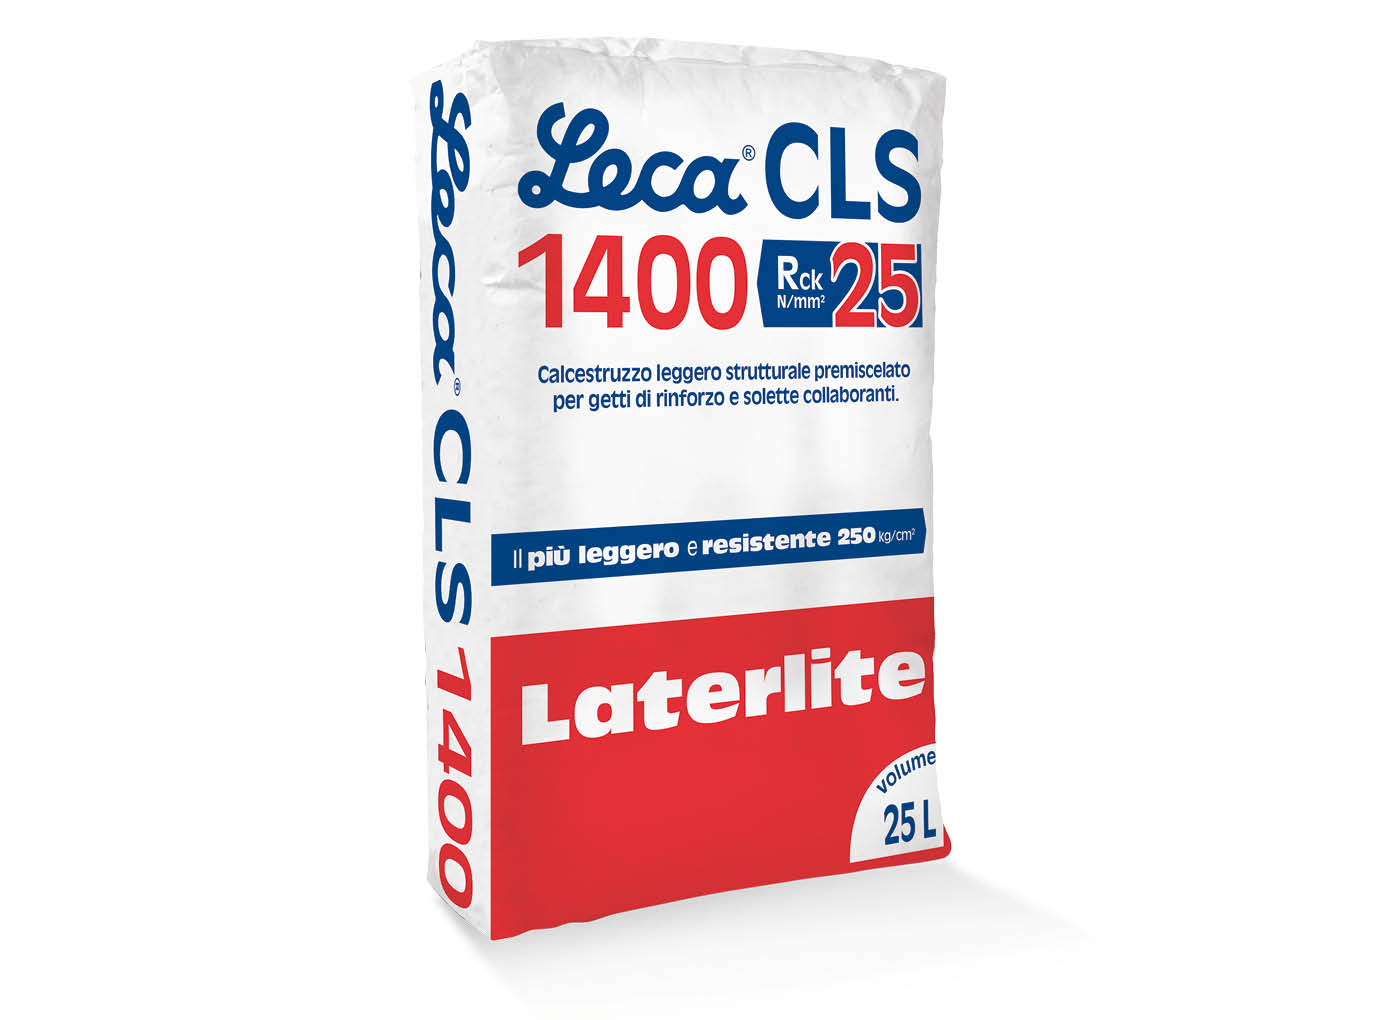 sacco-lecacls-1400-calcestruzzo-leggero-P22-1